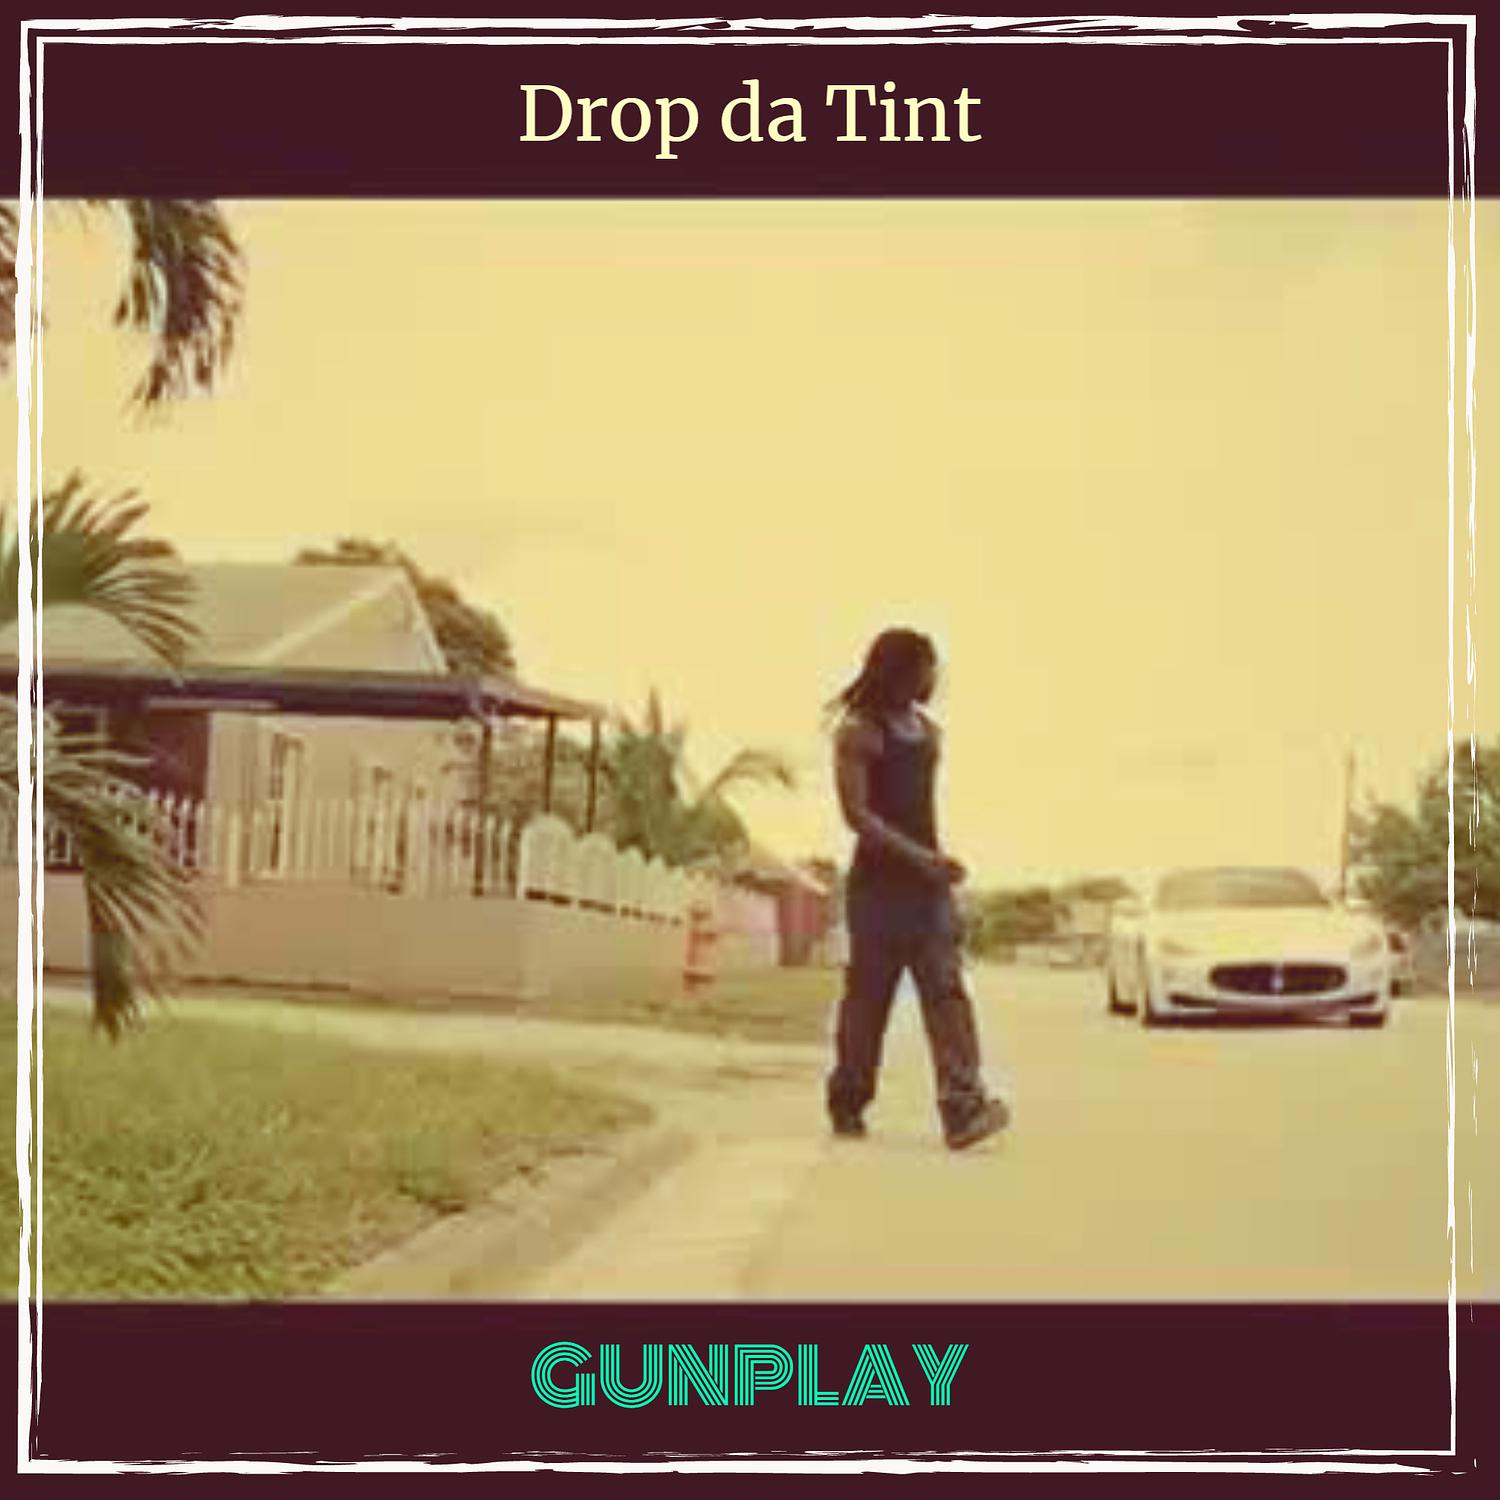 Gunplay - Drop da Tint